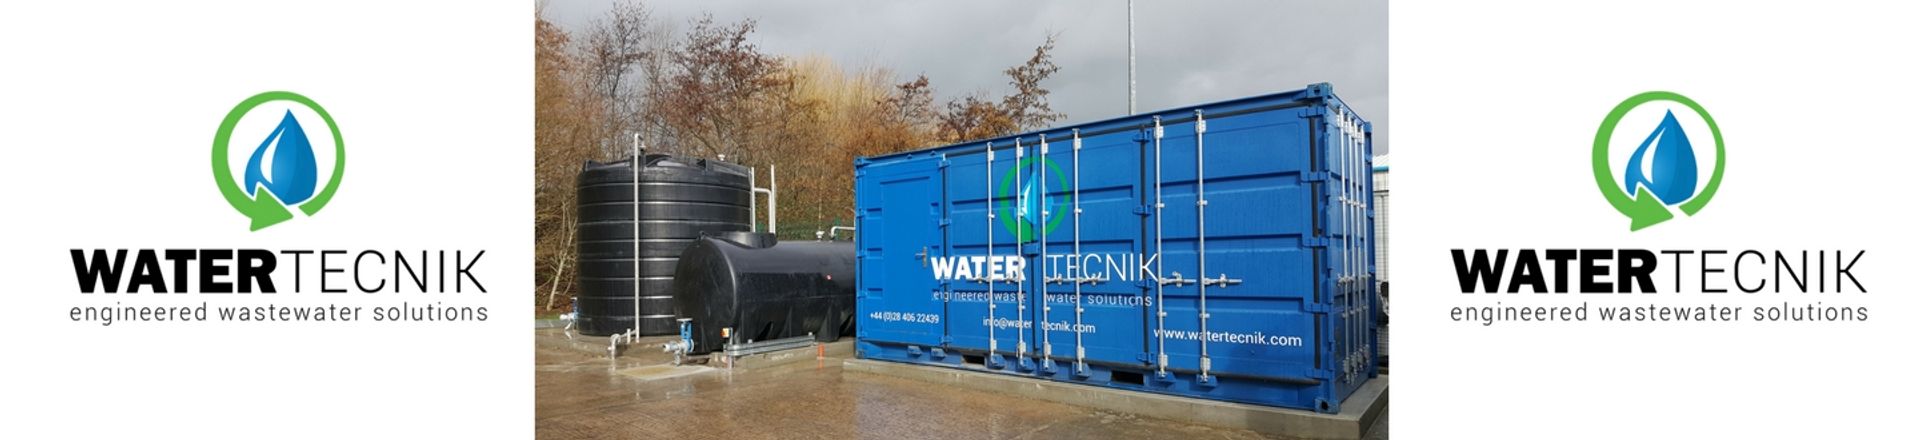 Water Tecnik Ltd.